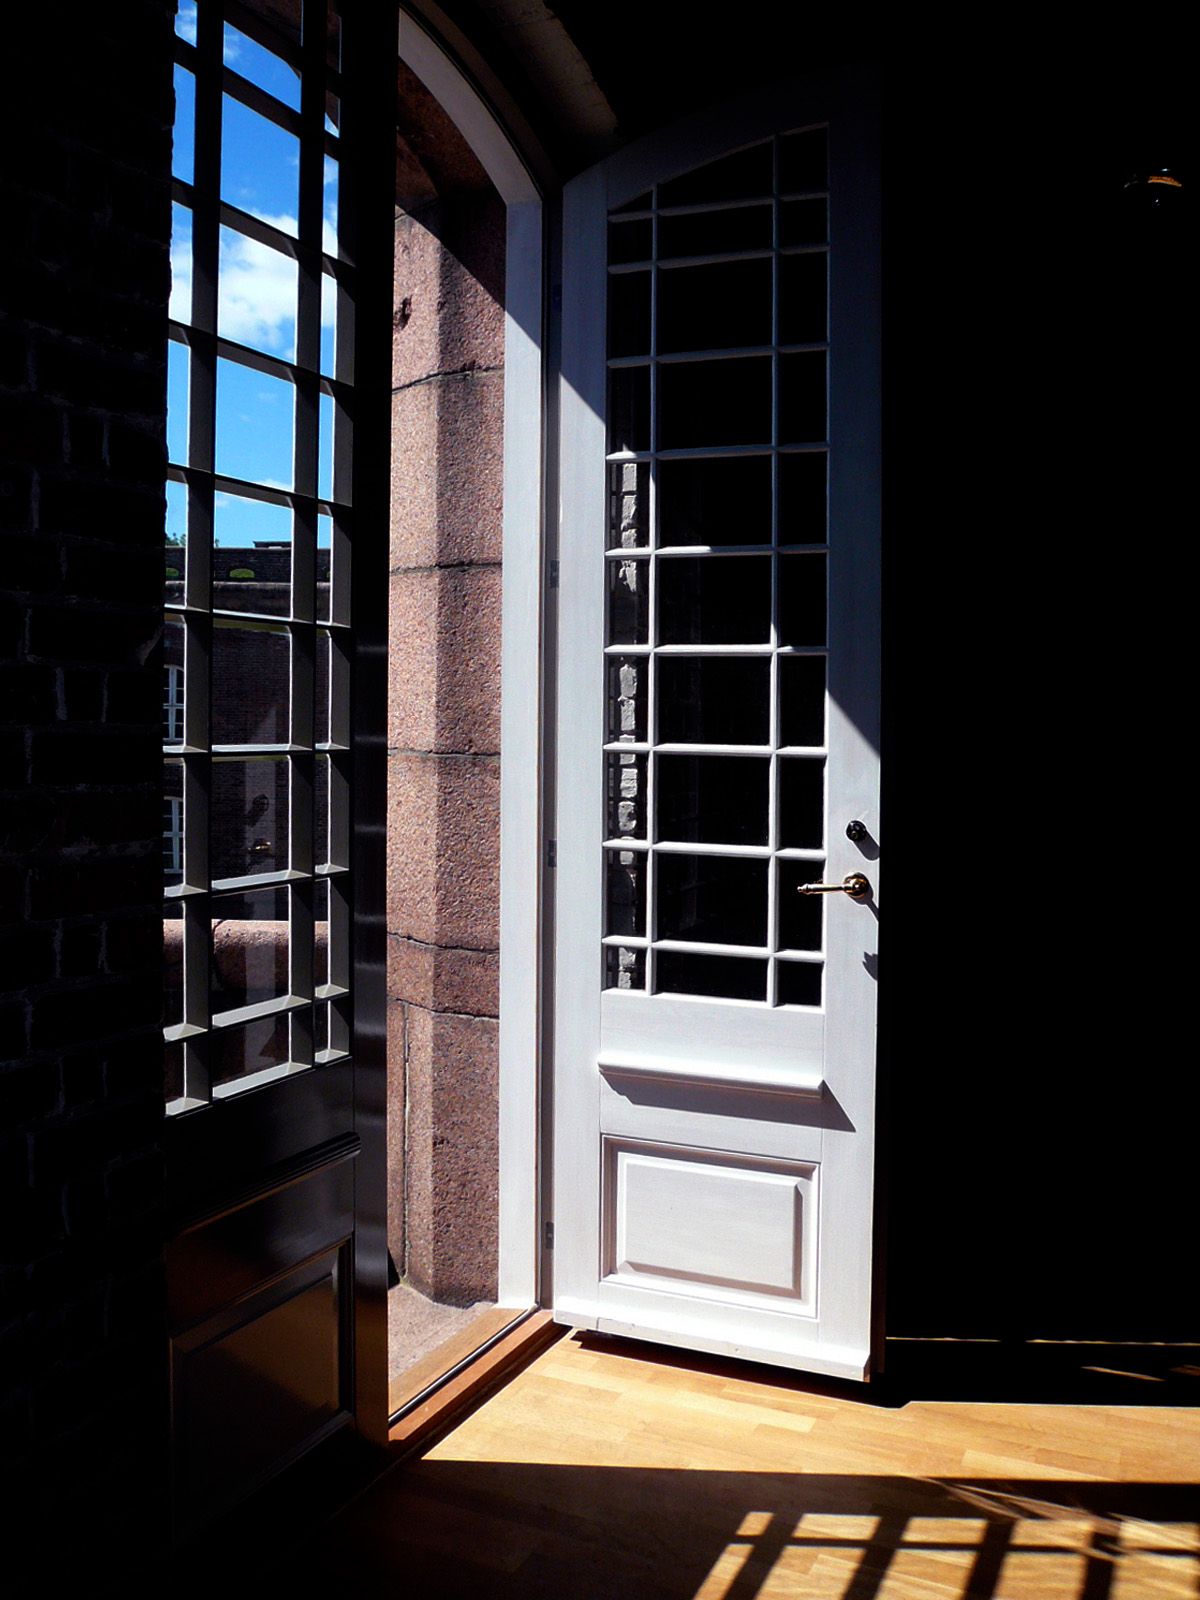 Stemningsfoto av sollys treffer vinduet og lager mønter i rommet. Åpen balkongdør.